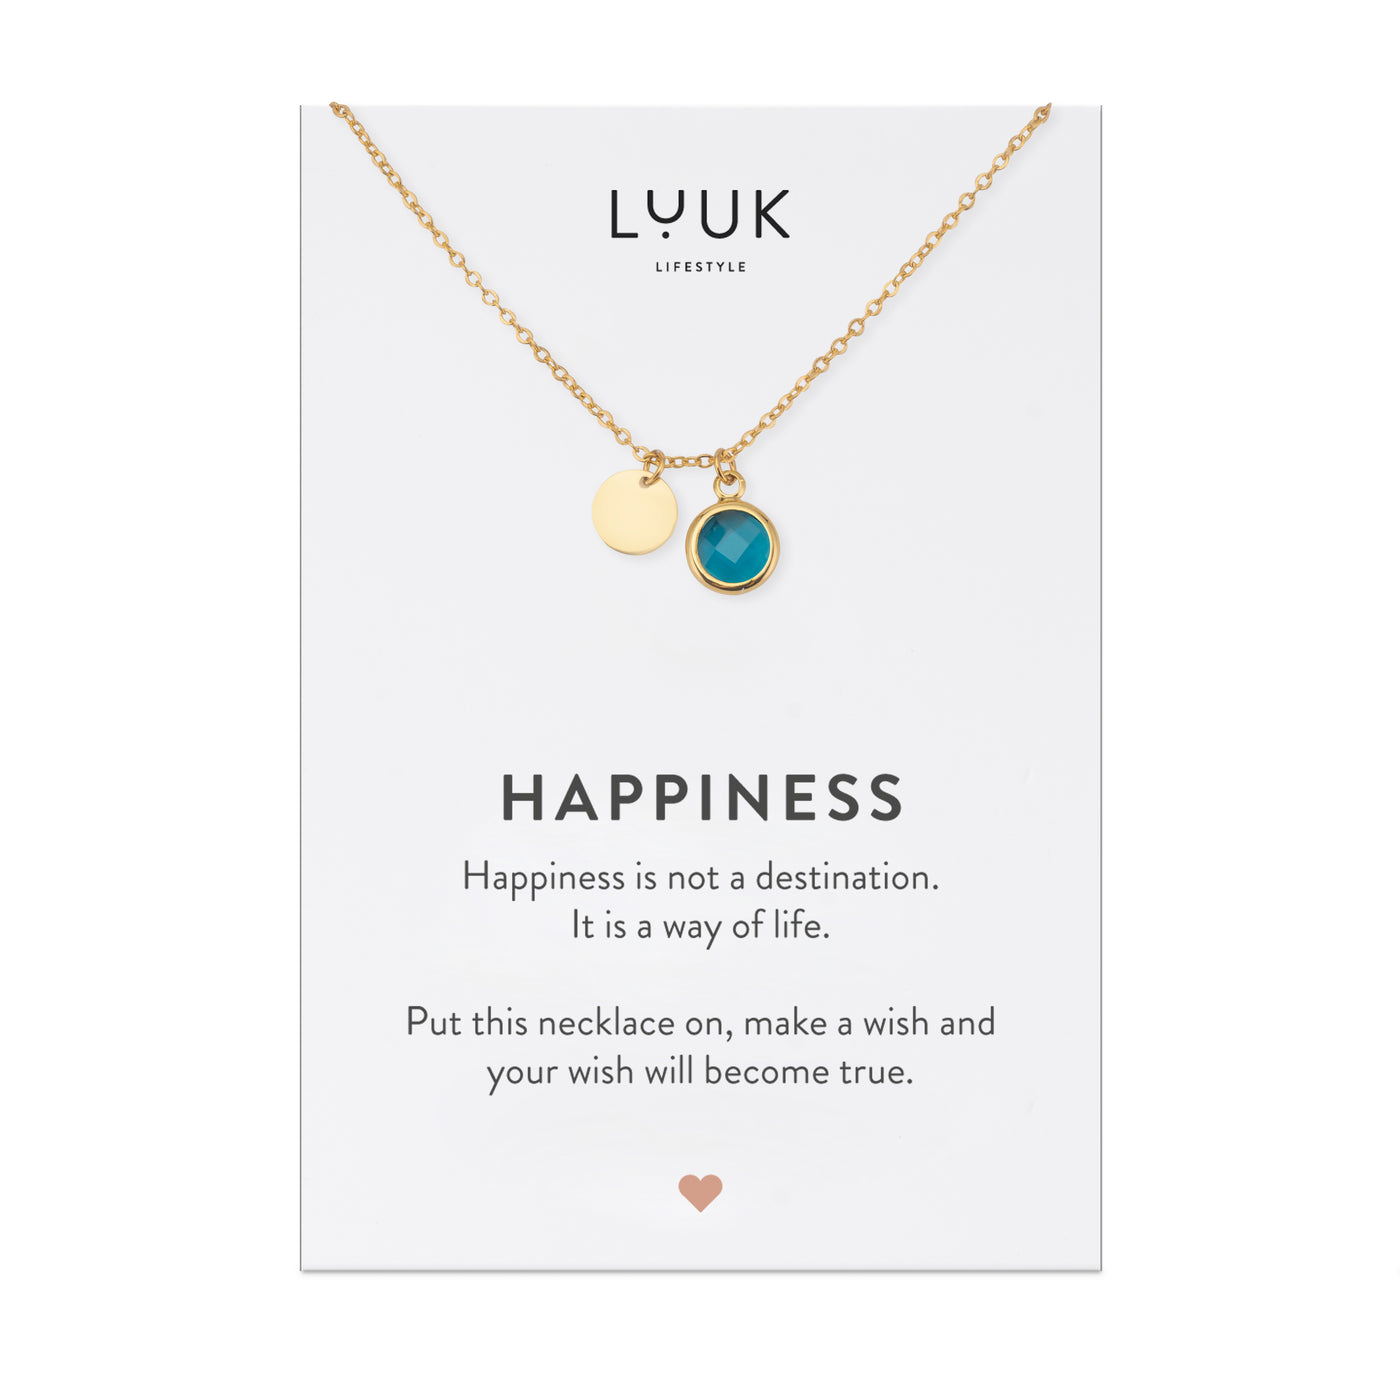 Vergoldete Kette mit blauem Kristall Anhänger auf Happiness Spruchkarte von der Marke Luuk Lifestyle